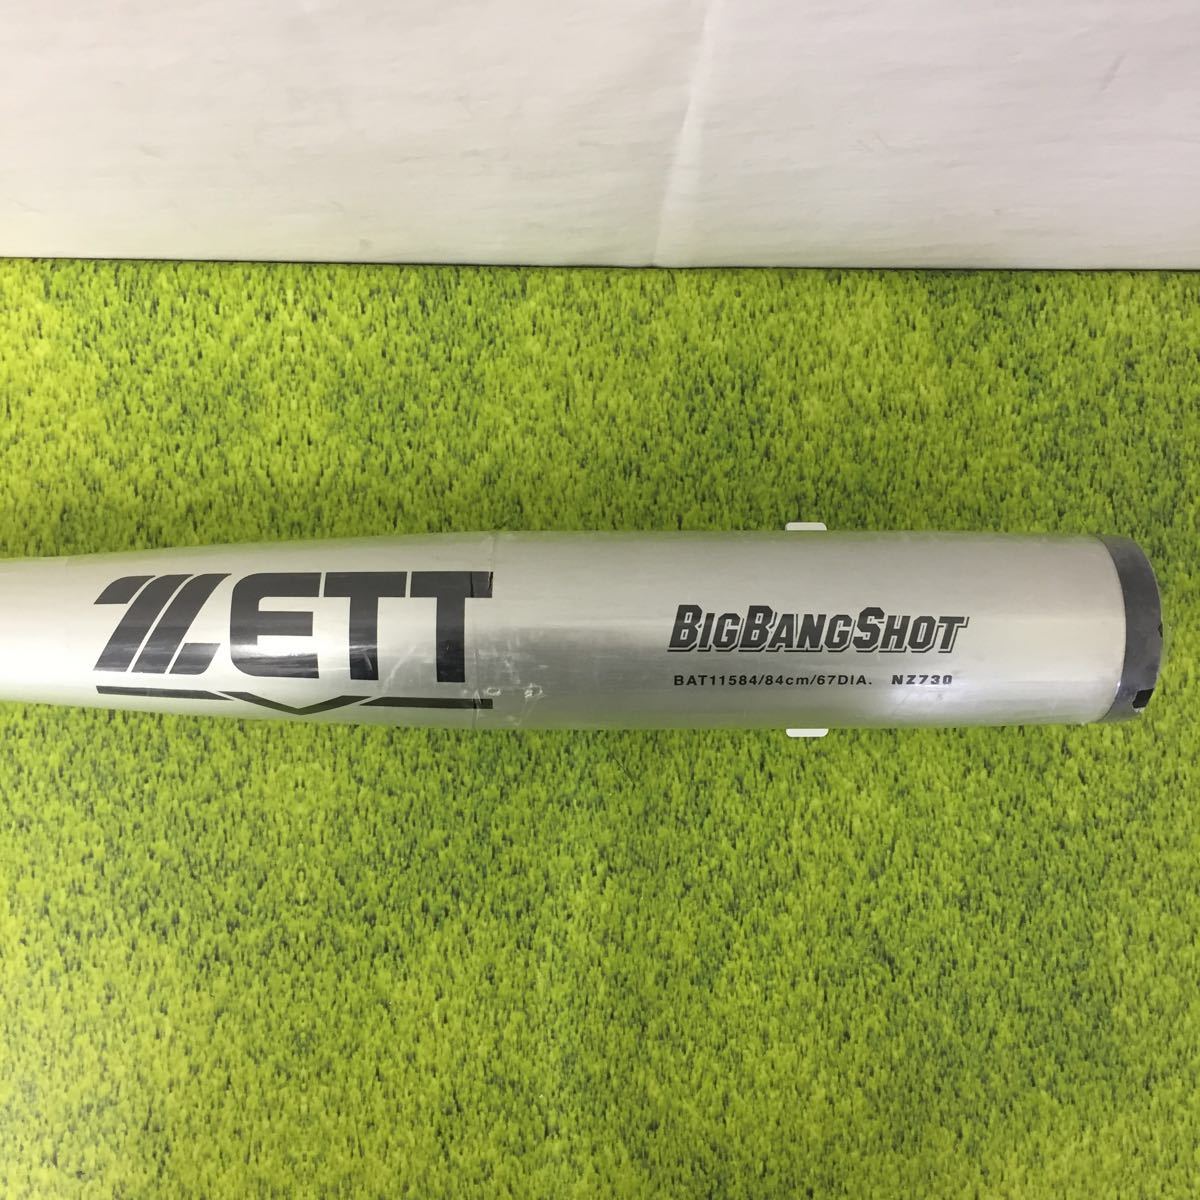 ZETT bigbangshot ビックバンショット 硬式金属製バット 84cm - www.vetrepro.fr